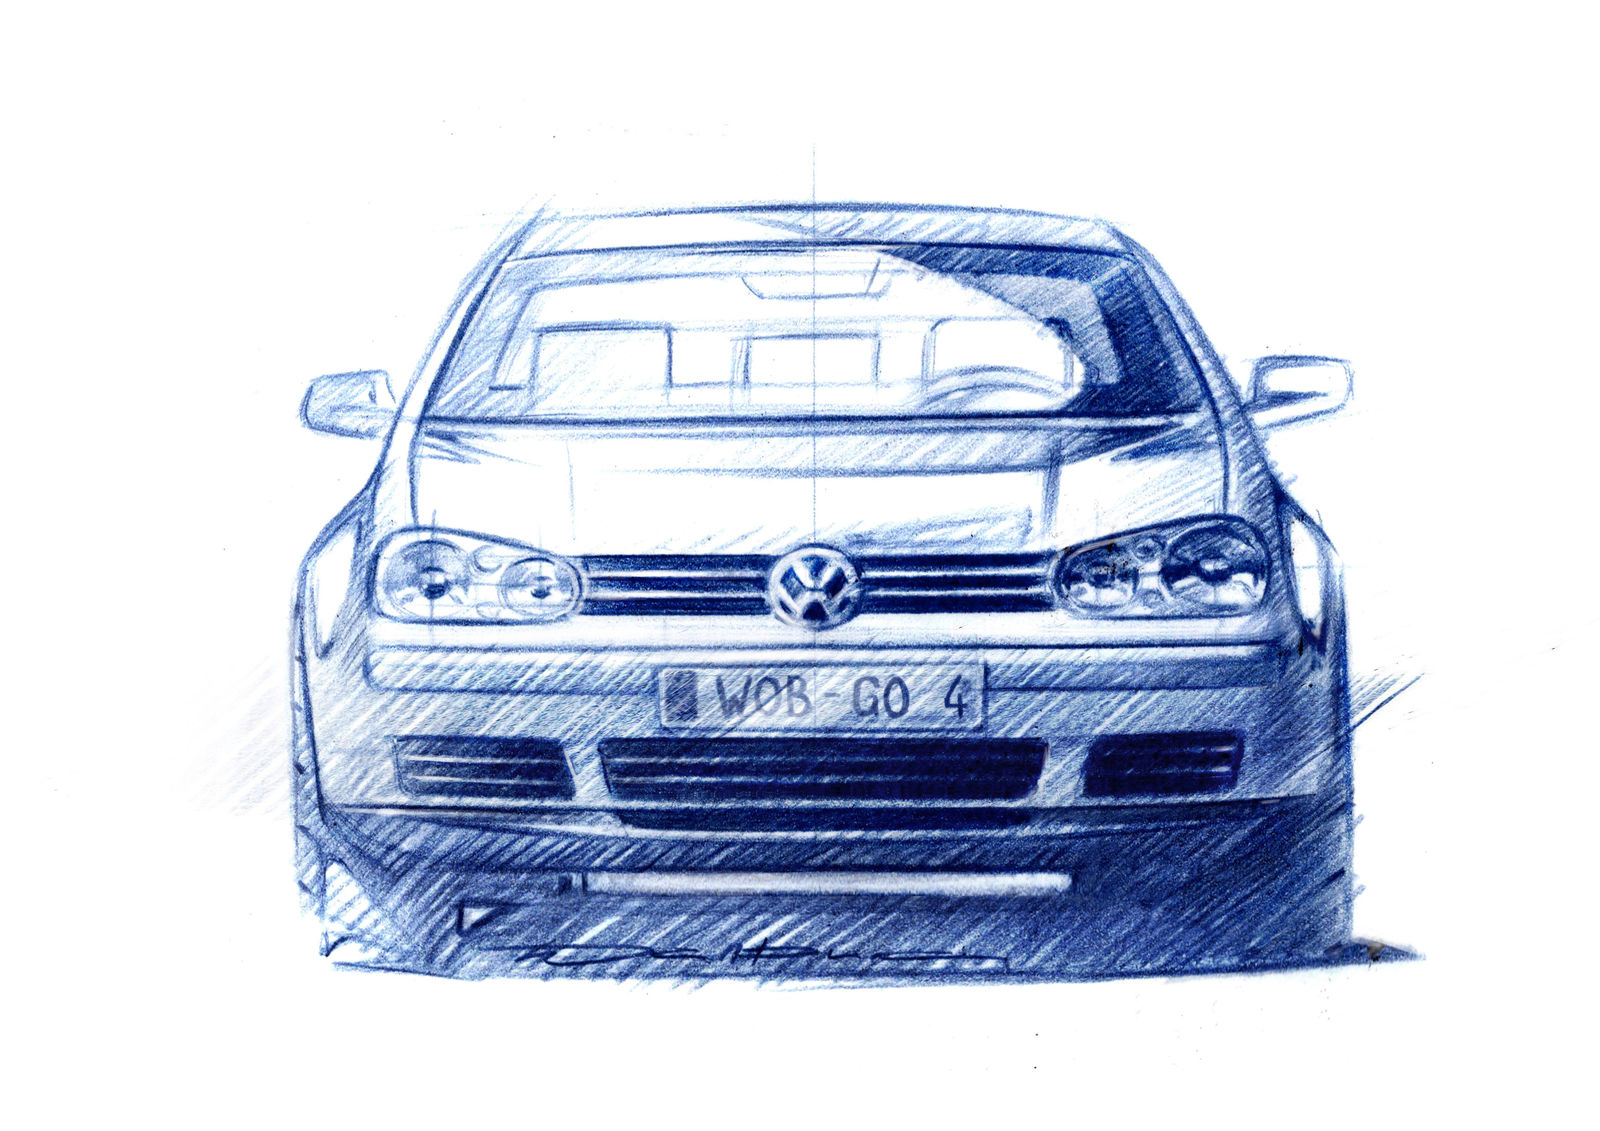 Volkswagen Golf - fourth Generation